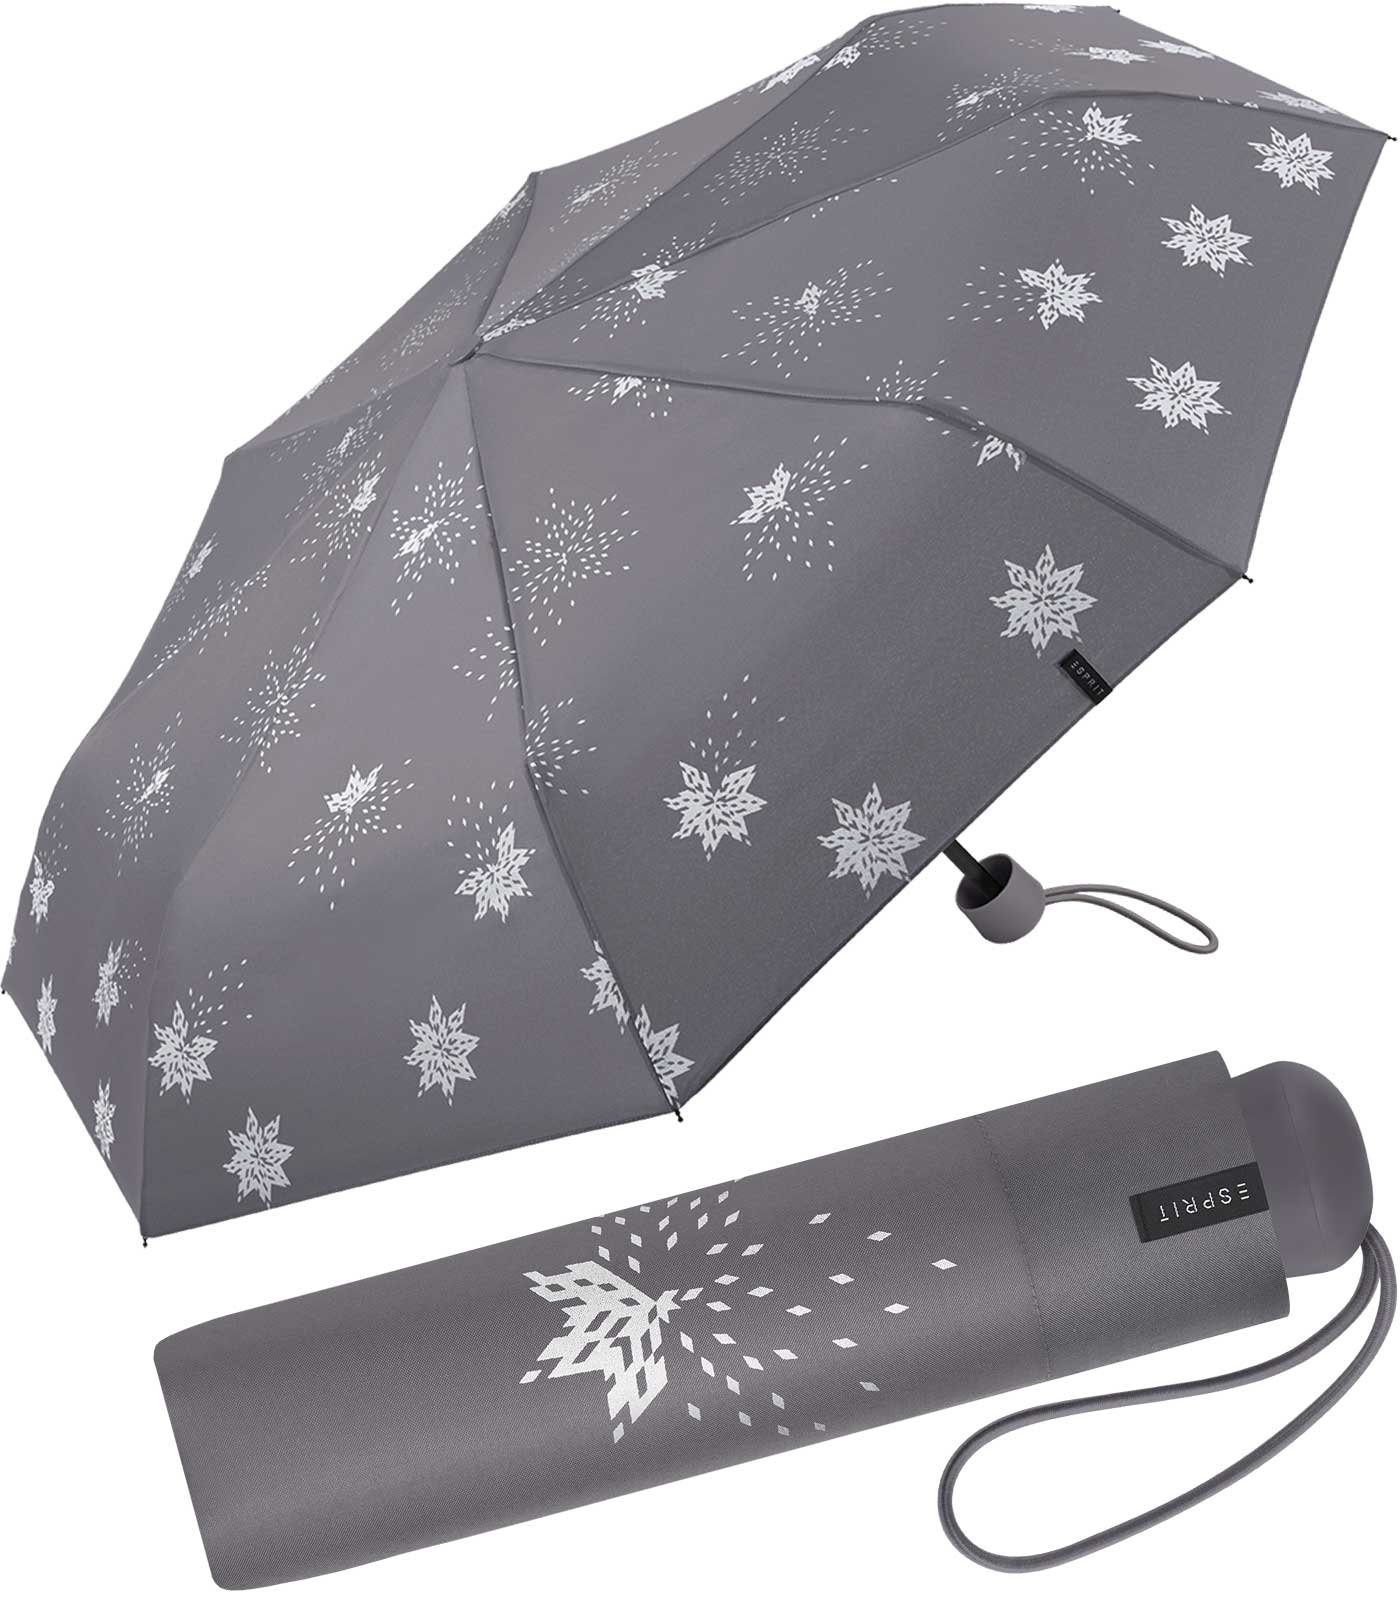 Esprit Langregenschirm schöner, kleiner Schirm für Damen, Bits and Stars - silber-metallic